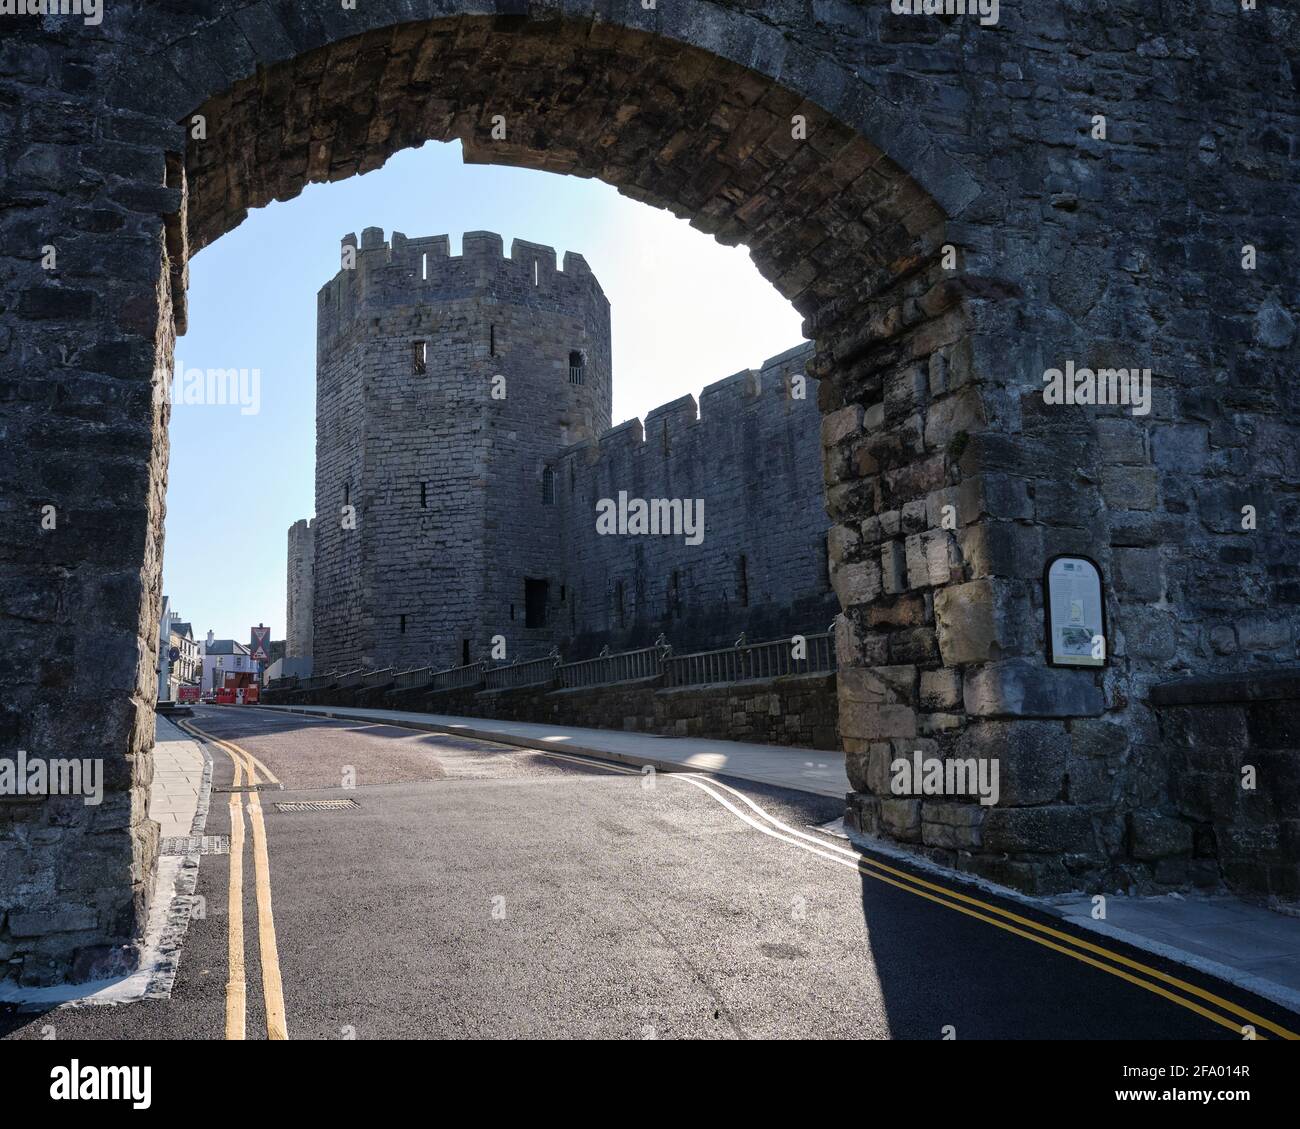 La torre del pozo del castillo de Caernarfon a través de un arco en El Muro de la Ciudad Foto de stock